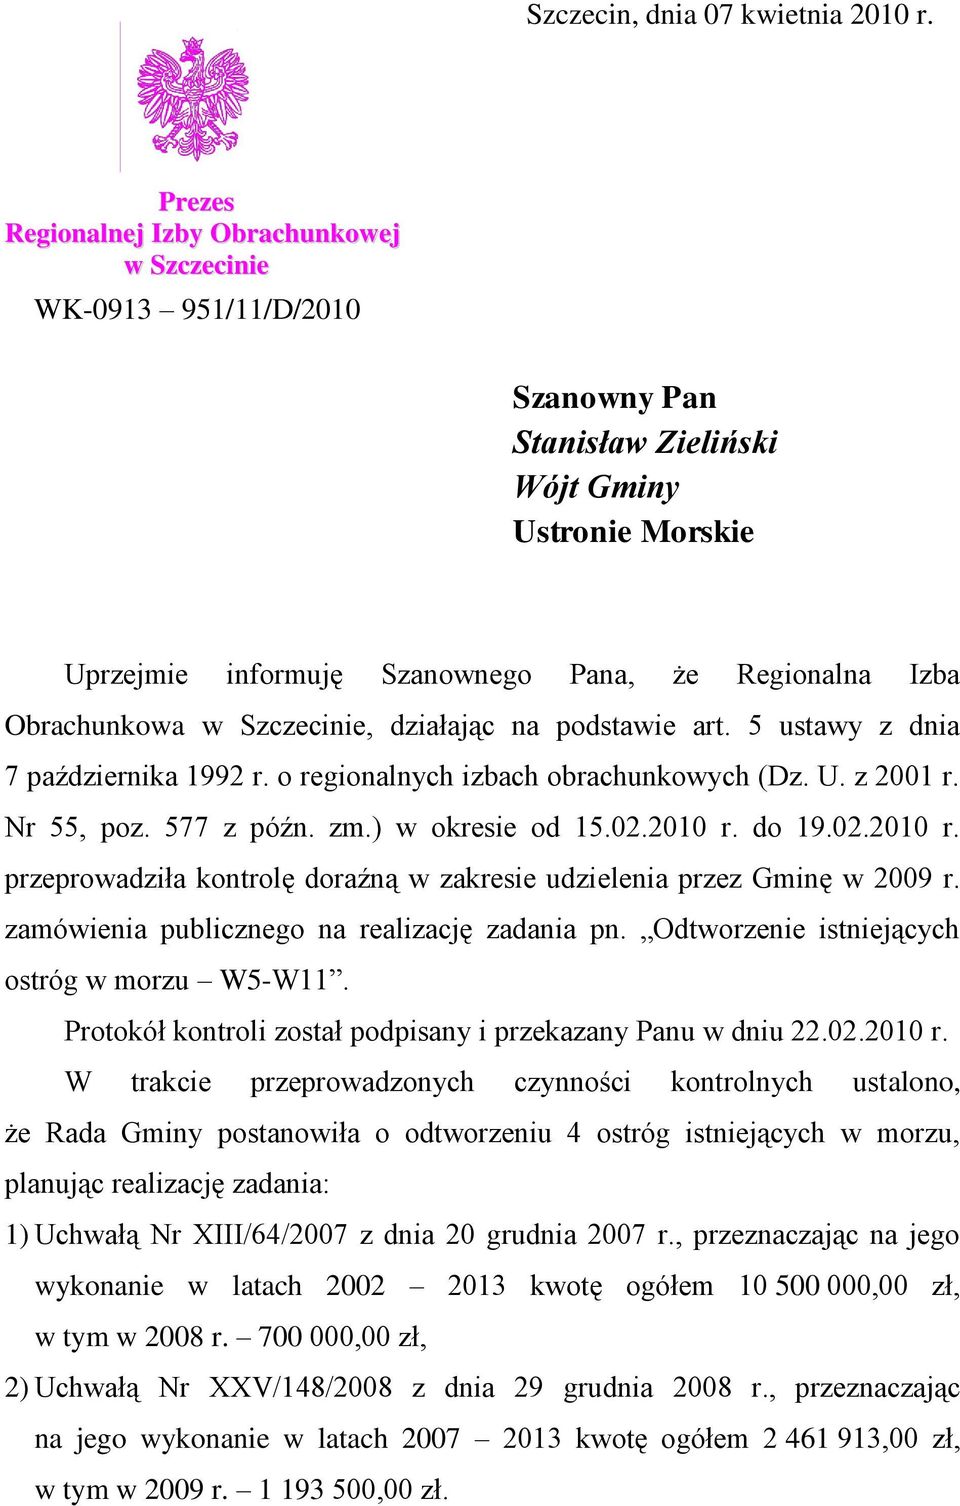 Obrachunkowa w Szczecinie, działając na podstawie art. 5 ustawy z dnia 7 października 1992 r. o regionalnych izbach obrachunkowych (Dz. U. z 2001 r. Nr 55, poz. 577 z późn. zm.) w okresie od 15.02.